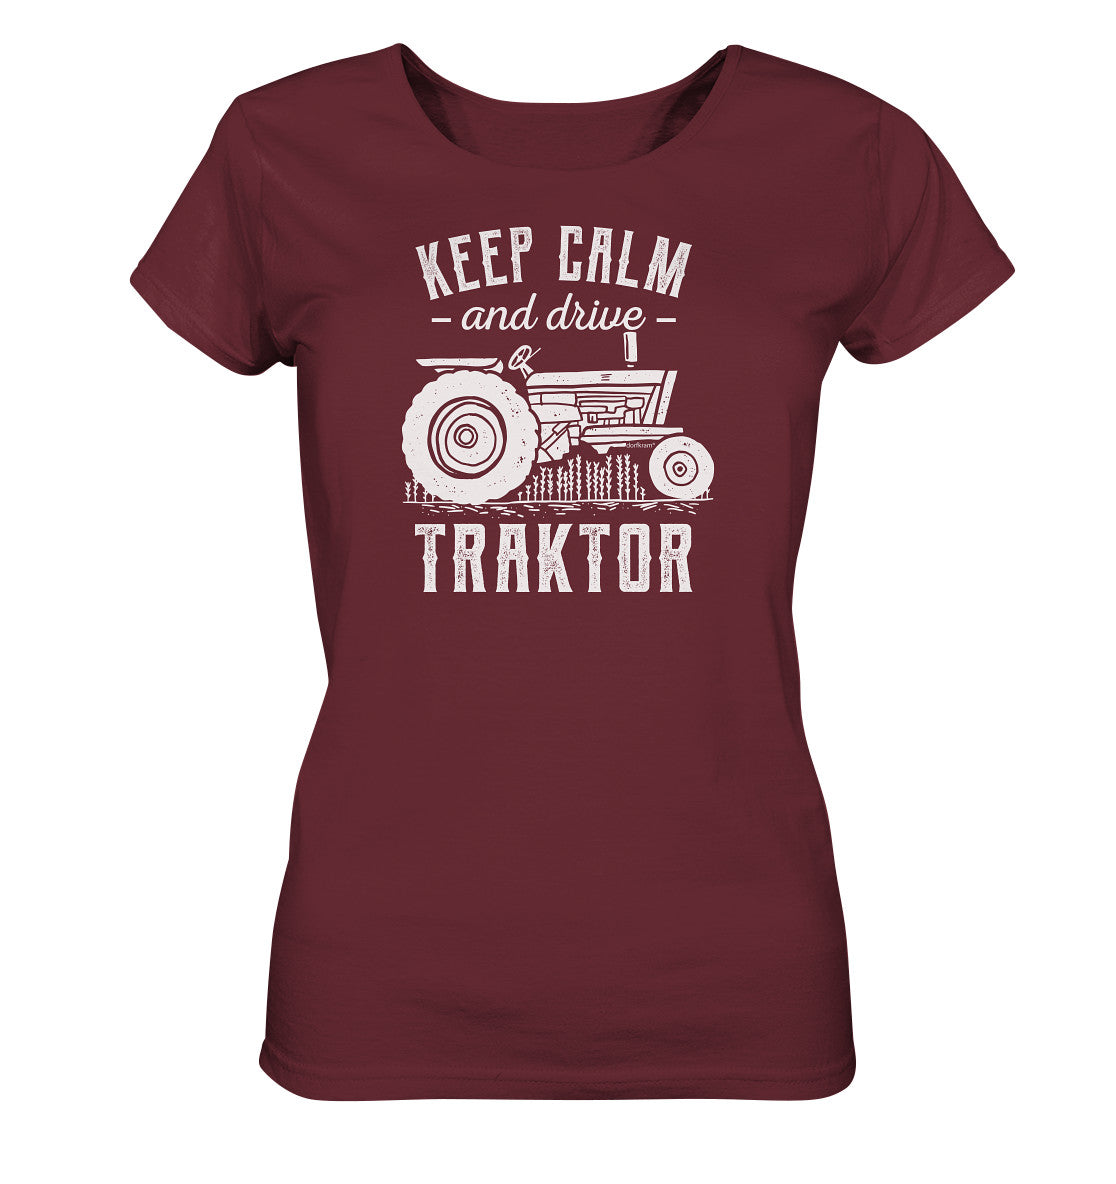 Traktor Shirt Damen schwarz Traktorfahren Treckerfahren burgund